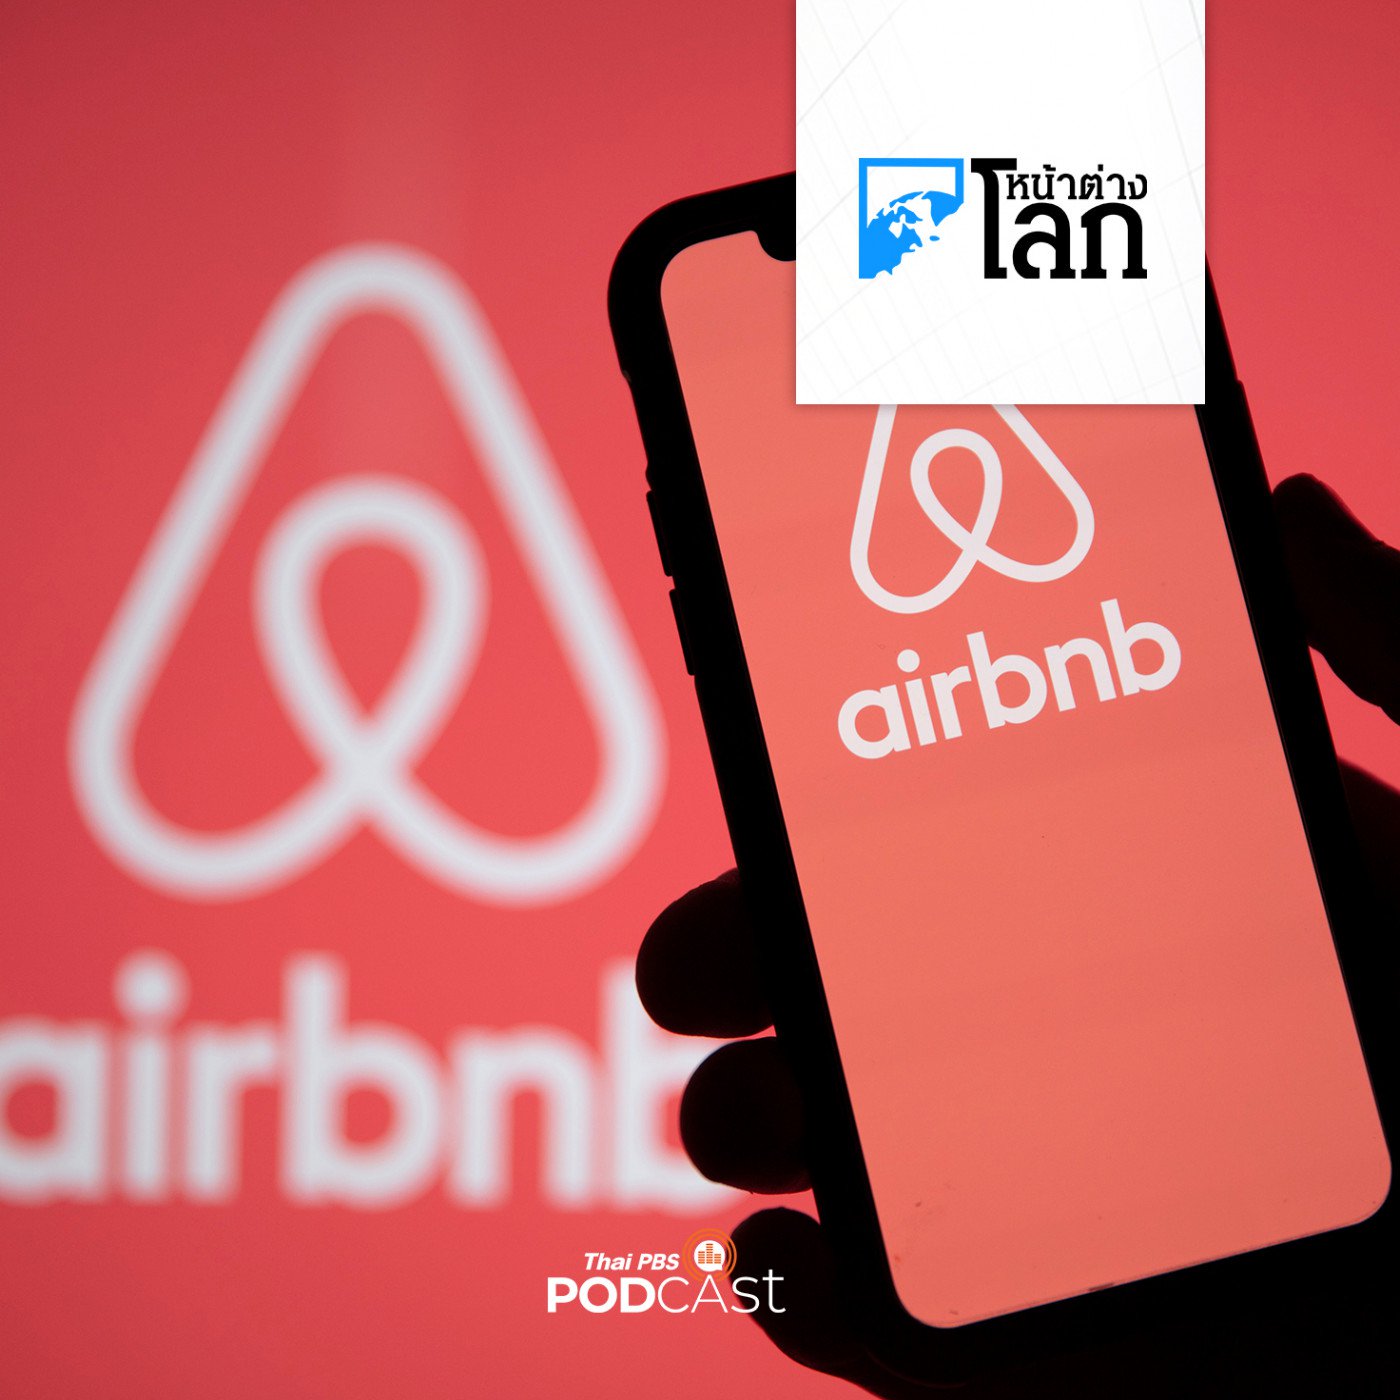 หน้าต่างโลก : Airbnb ถูกปรับ 15 ล้านดอลลาร์ออสเตรเลีย ฐานทำให้ลูกค้าชาวออสเต�